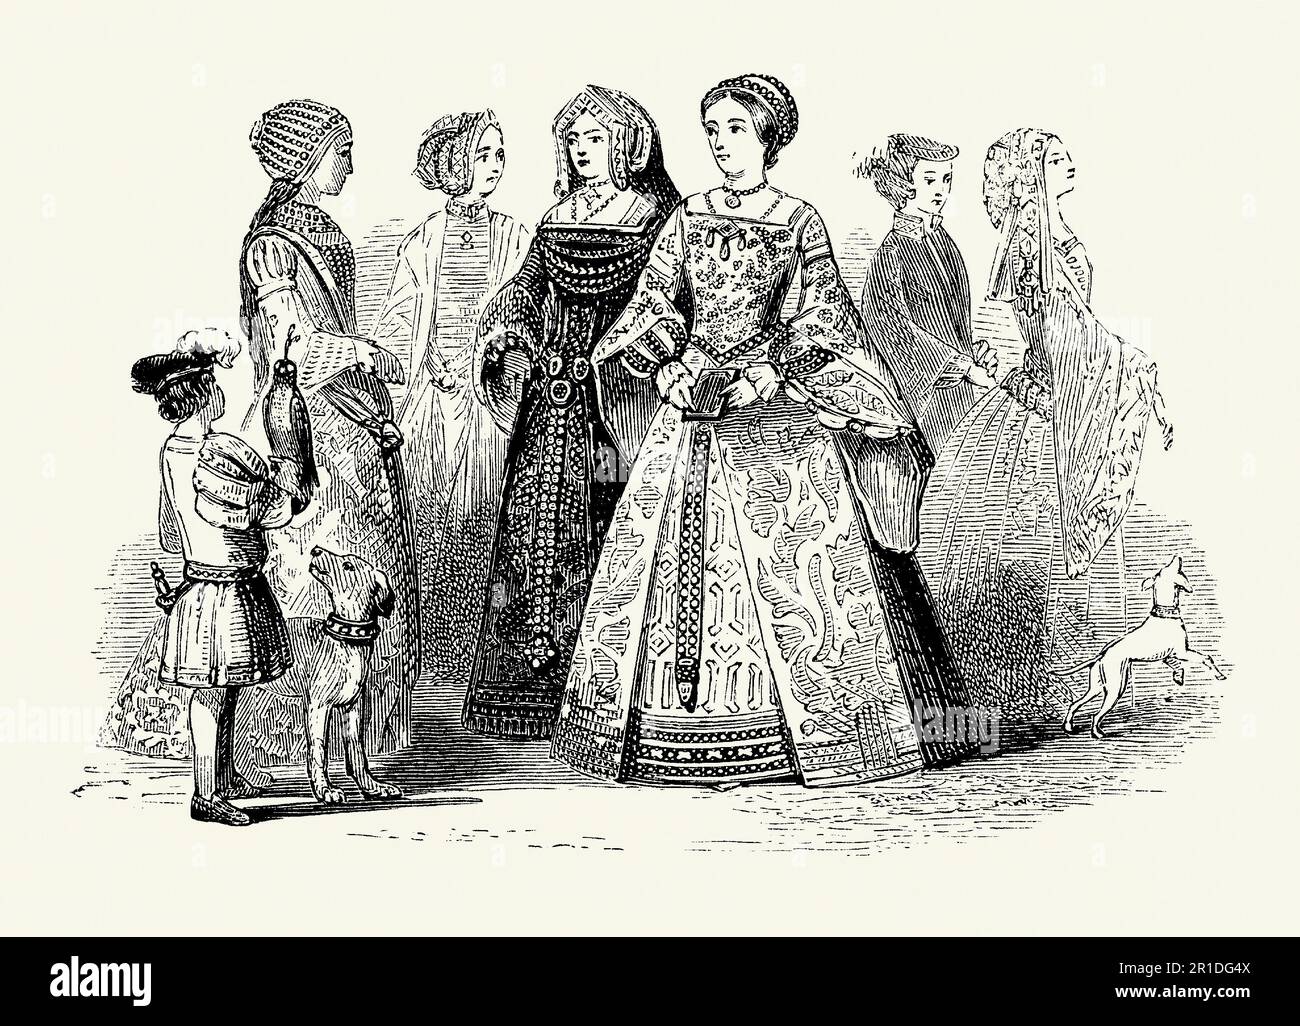 Eine alte Gravur von Kleidung, die Frauen in der Tudor Times in England trugen. Der Kleidungsstil stammt aus der ersten Hälfte des 16. Jahrhunderts während der Herrschaft von Edward VI (1509-1547). Damenbekleidung war oft mit langen Kleidern versehen, die oft mit Juwelen bestickt waren. Eckige Ausschnitte und lockere Ärmel zum Aufhängen waren beliebt. Für Frauen war das Haar oft geflochten. Die Maskenhalterung enthielt aufgestickte Hauben und Turbans. Diese Kleidung wäre von den Leuten in der Gesellschaft getragen worden, die Geld, Adel, Adel und andere, die mit dem königlichen Hof zu tun haben. Stockfoto